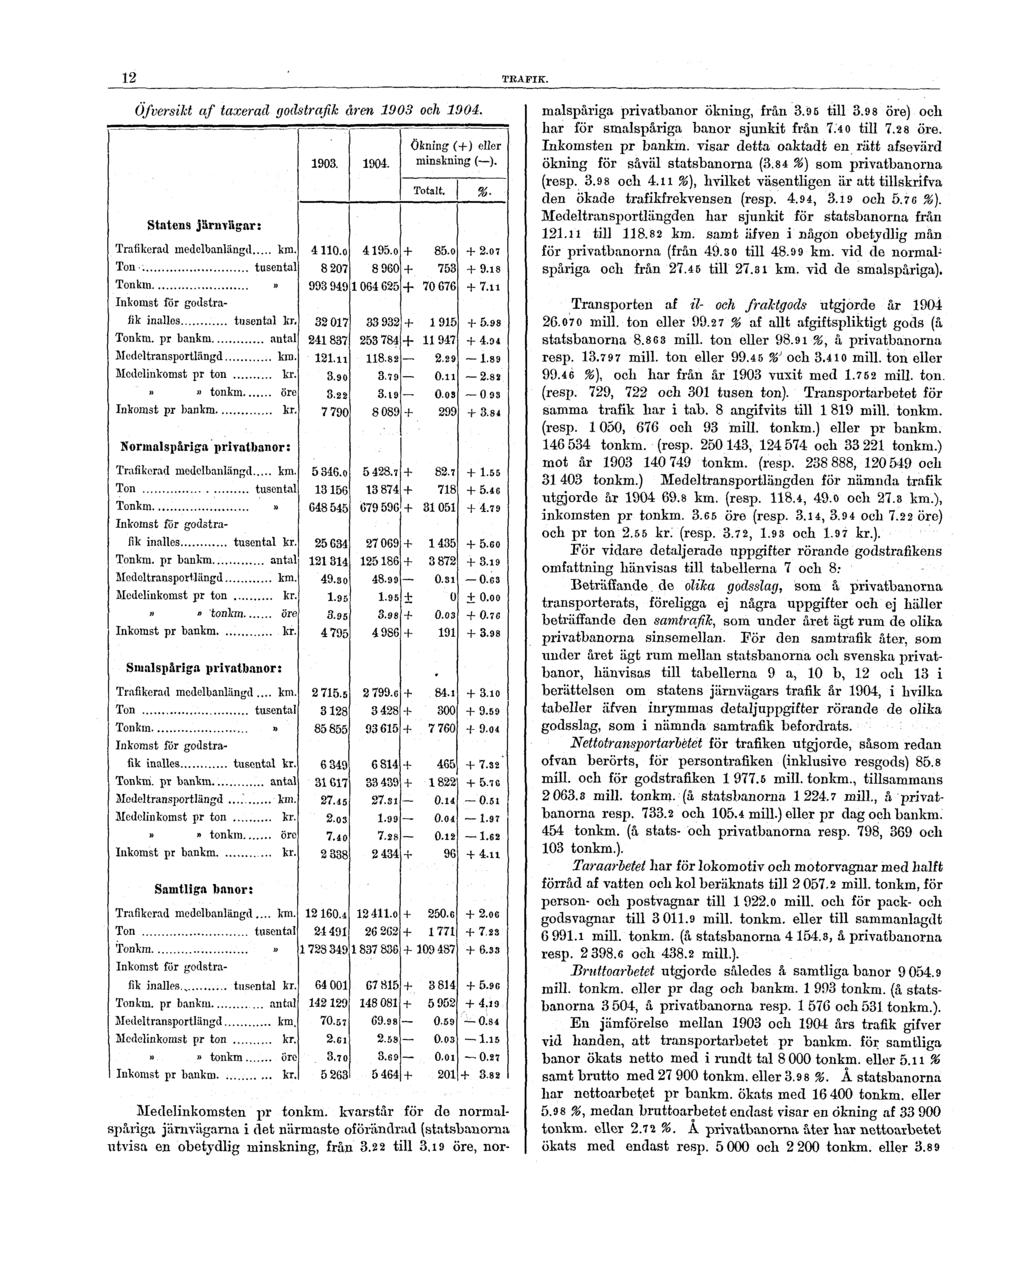 12 TRAFIK. Öfversikt af taxerad godstrafik åren 1903 och 1904. Medelinkomsten pr tonkm.